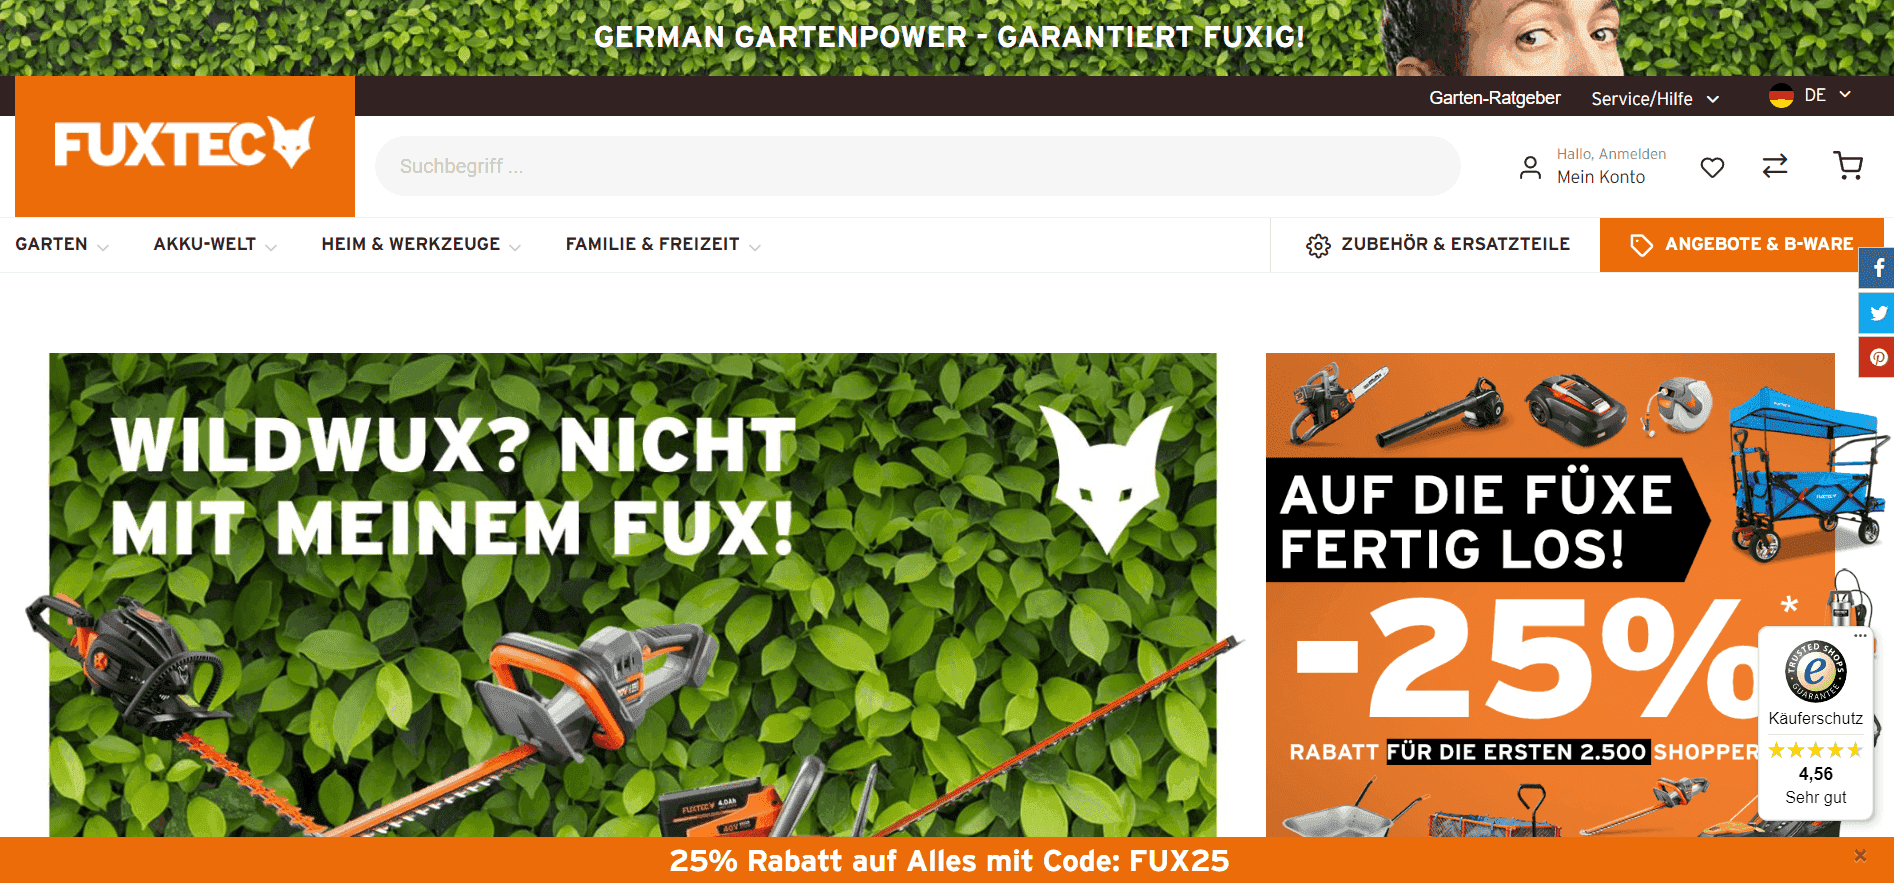 Homepage des Onlineshops "Fuxtec" zeigt verschiedene Angebote von Gartenartikeln